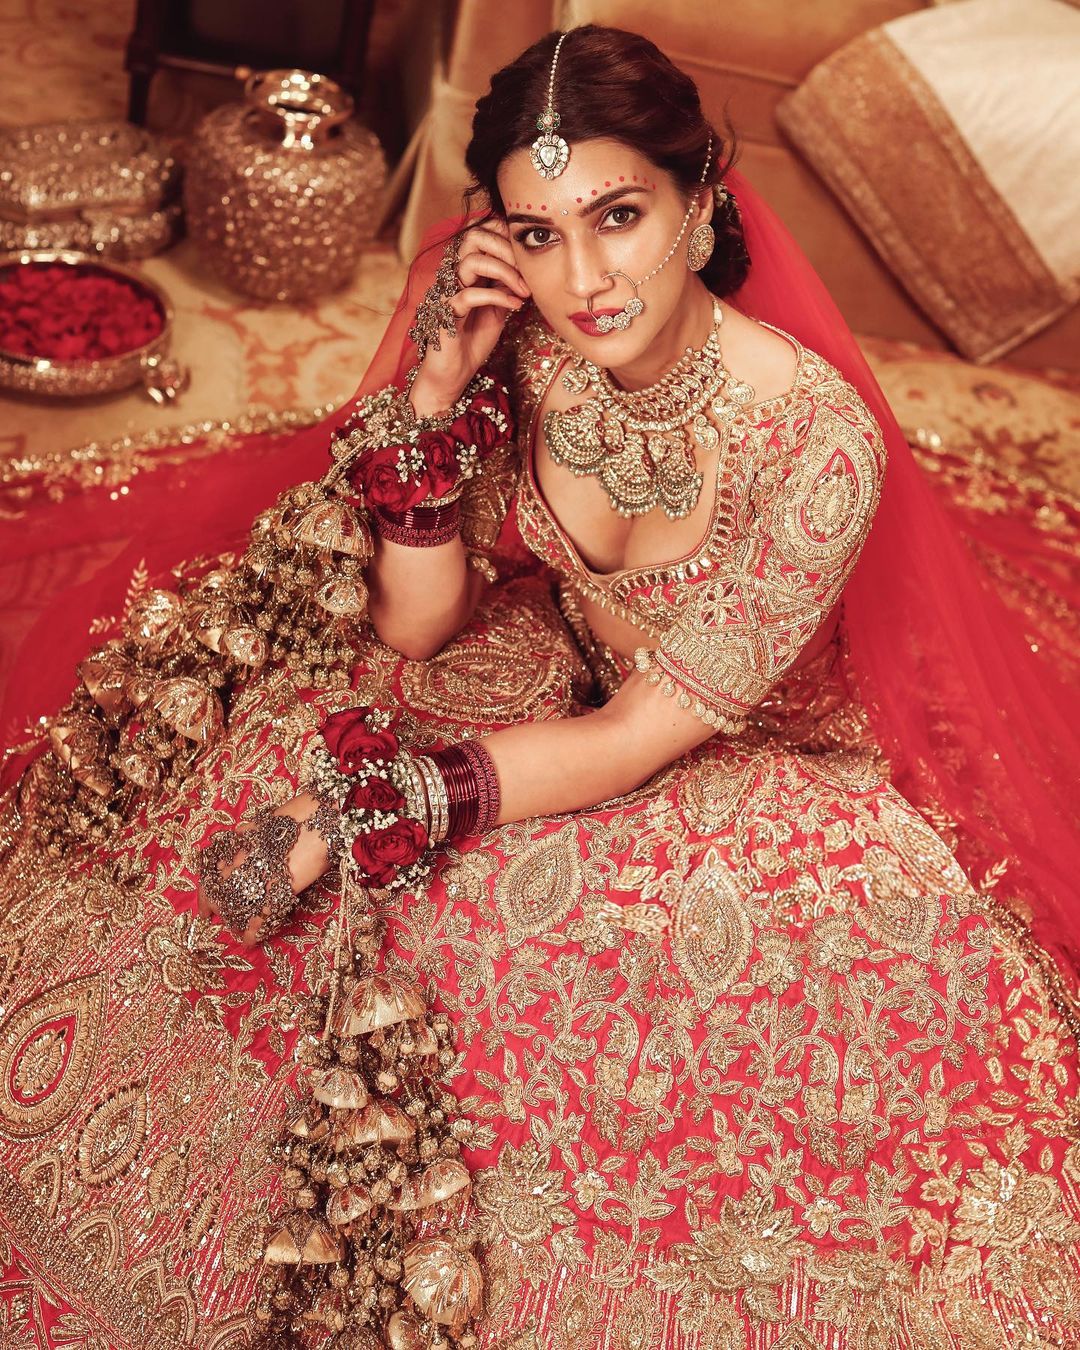 Kriti Sanon बनी दुल्हनियाँ, लाल रंग का लहंगा, हाथों में कलीरे बेहद खूबसूरत लग रही हैं, देखें Photos